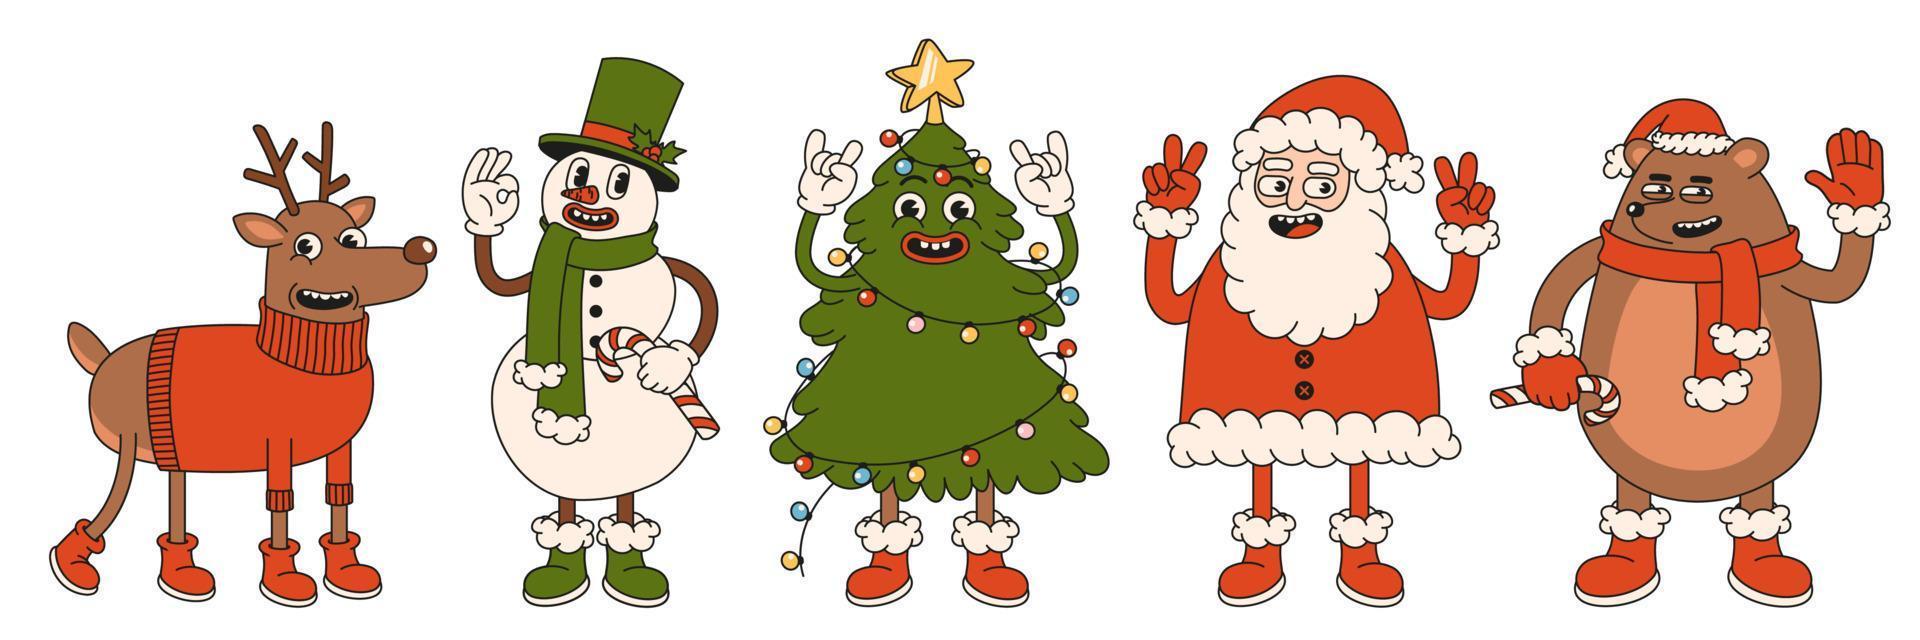 Frohe Weihnachten und ein glückliches Neues Jahr. weihnachtsmann, weihnachtsbaum, bär, schneemann, rentier. vektor